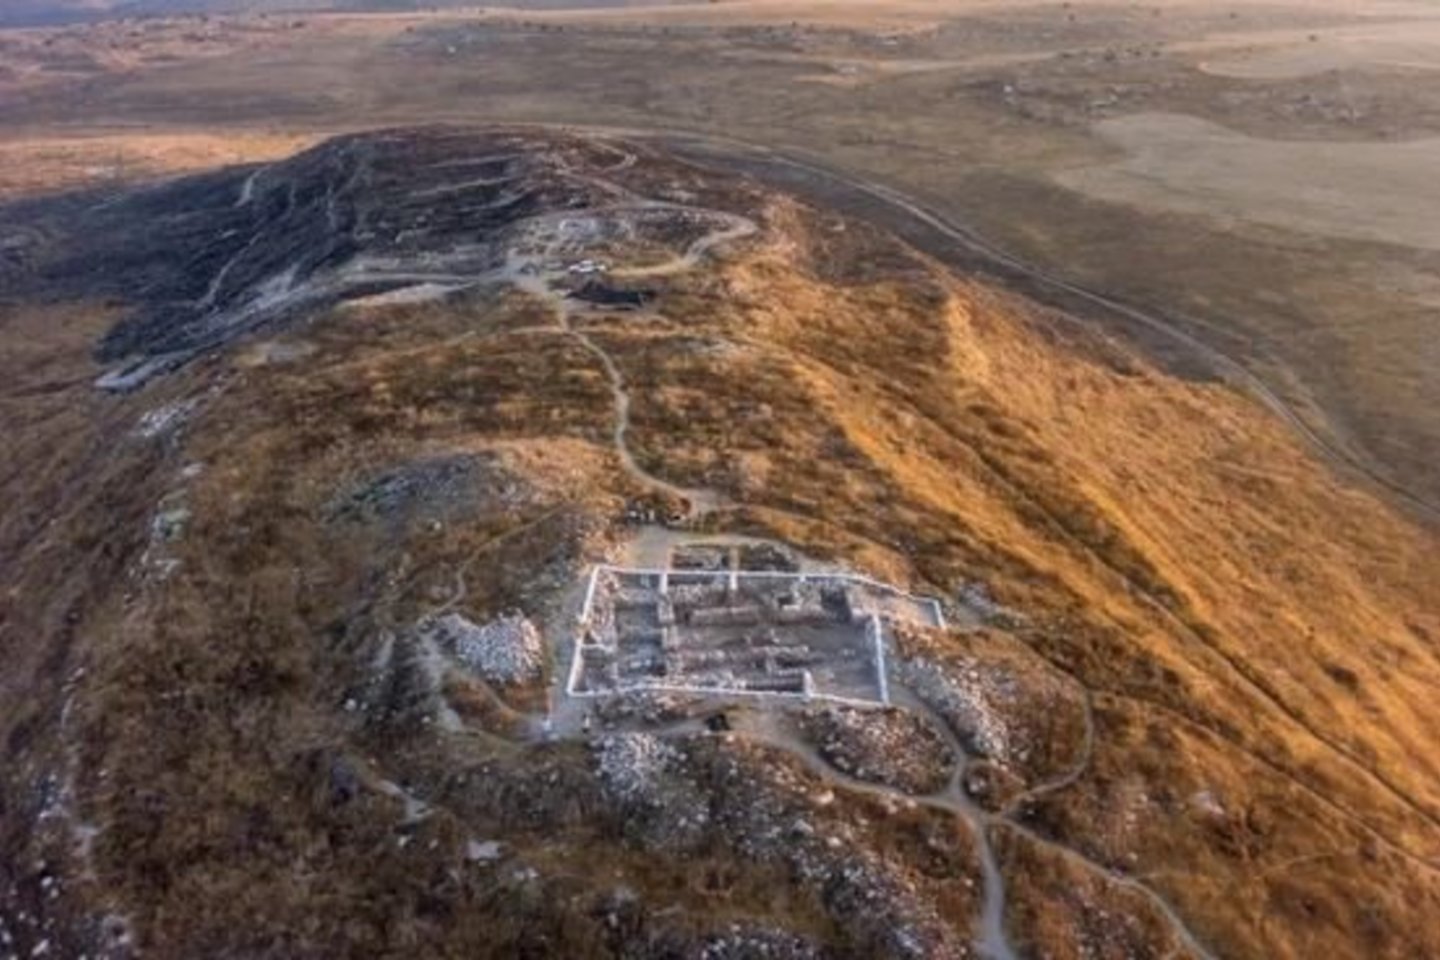  Archeologai Tel Etono archeologinėje radimvietėje aptiko 3000 metų senumo namą.<br> Griffin Aerial Imaging nuotr.